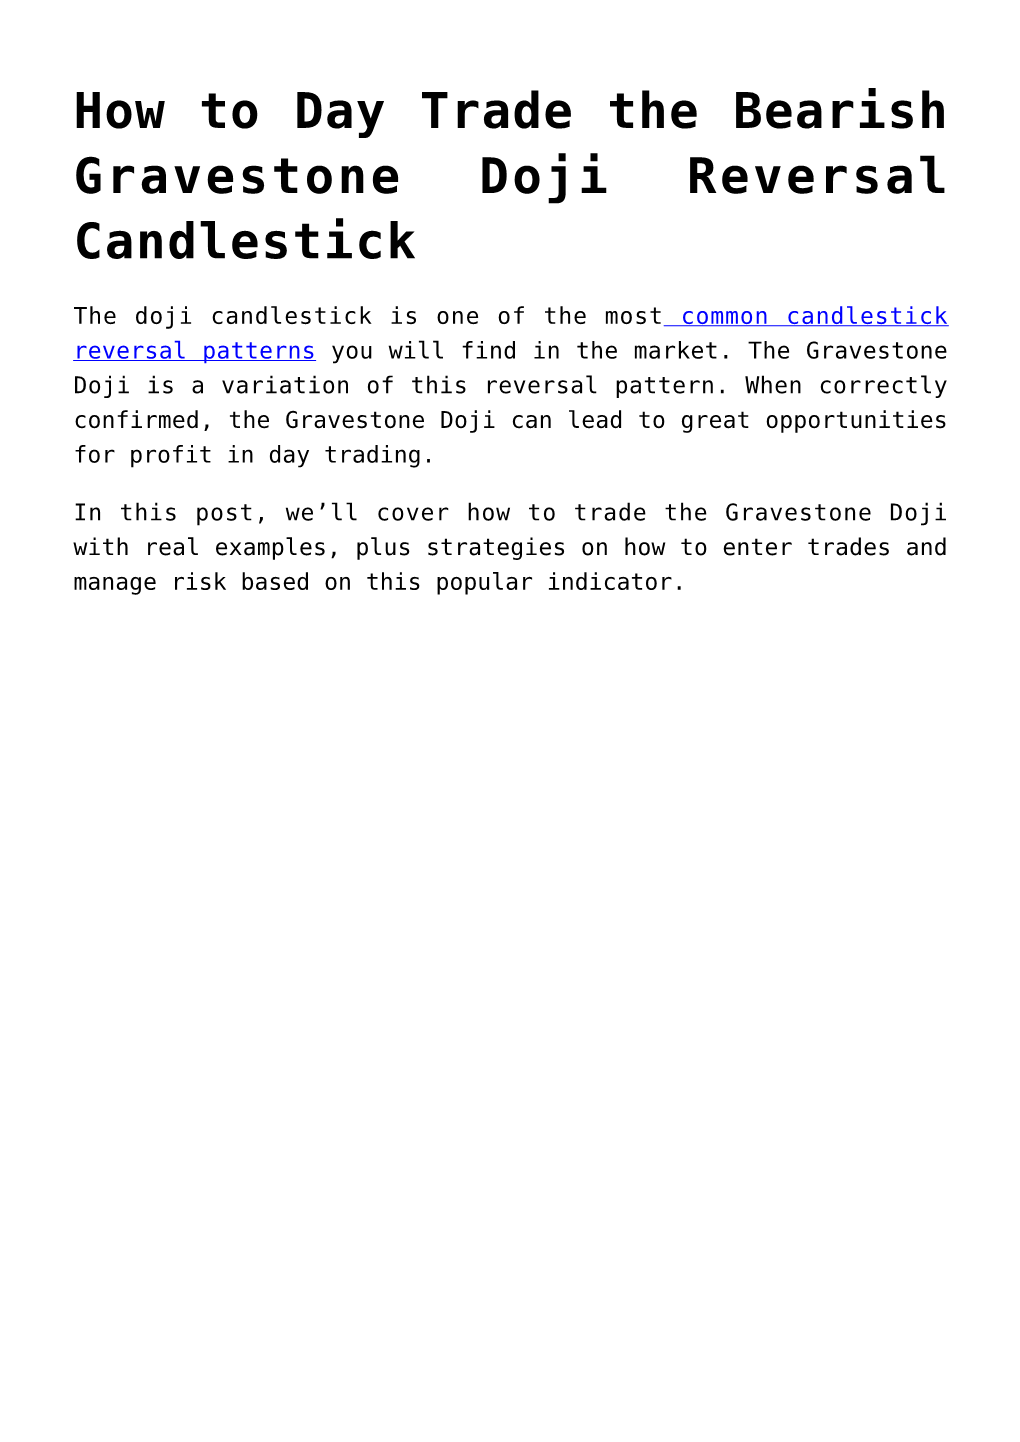 How to Day Trade the Bearish Gravestone Doji Reversal Candlestick